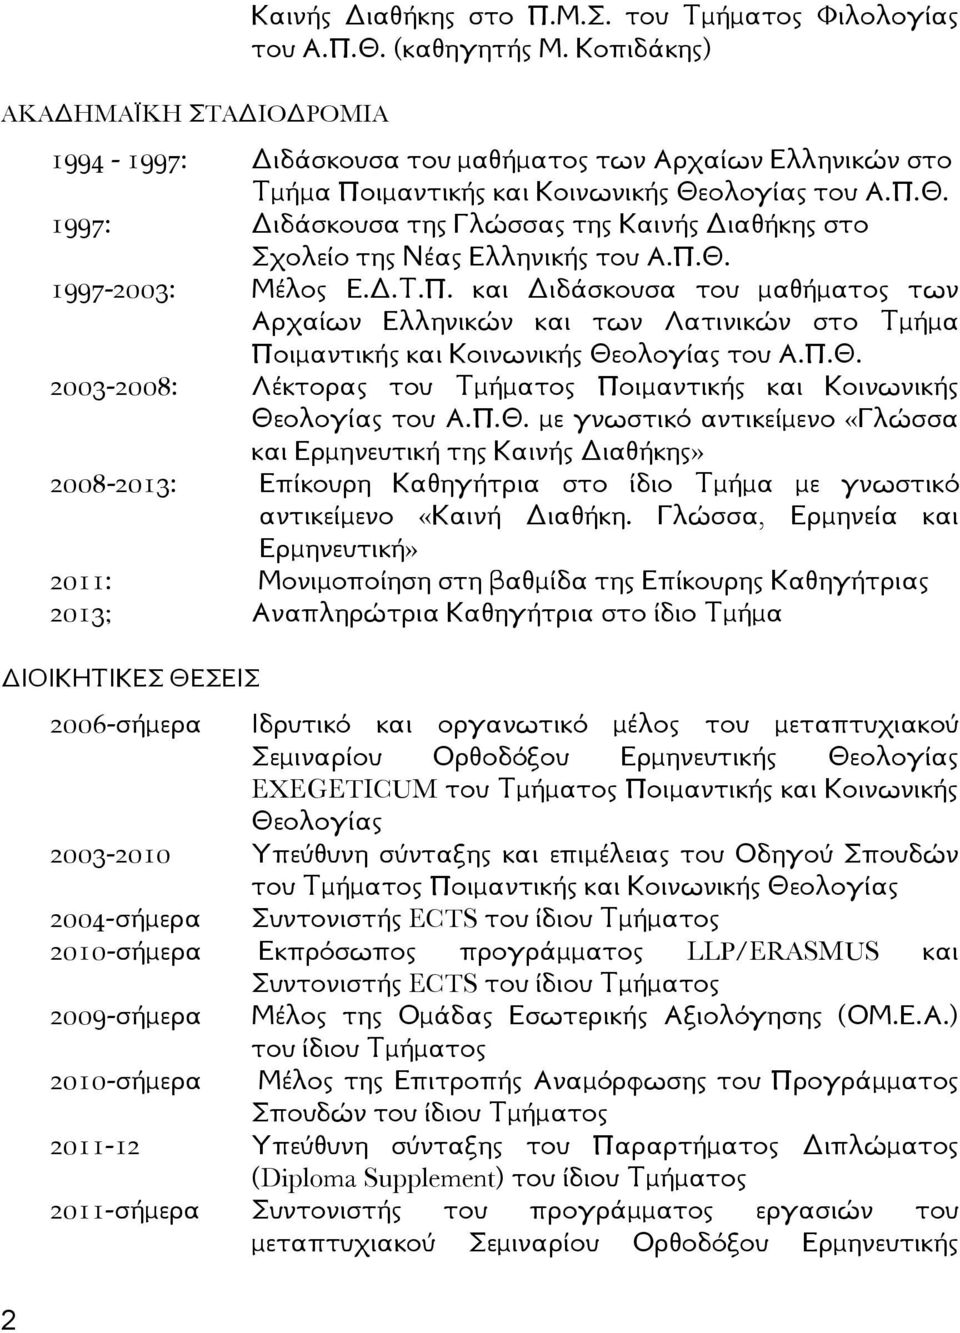 Π.Θ. 1997-2003: Μέλος Ε.Δ.Τ.Π. και Διδάσκουσα του μαθήματος των Αρχαίων Ελληνικών και των Λατινικών στο Τμήμα Ποιμαντικής και Κοινωνικής Θεολογίας του Α.Π.Θ. 2003-2008: Λέκτορας του Τμήματος Ποιμαντικής και Κοινωνικής Θεολογίας του Α.